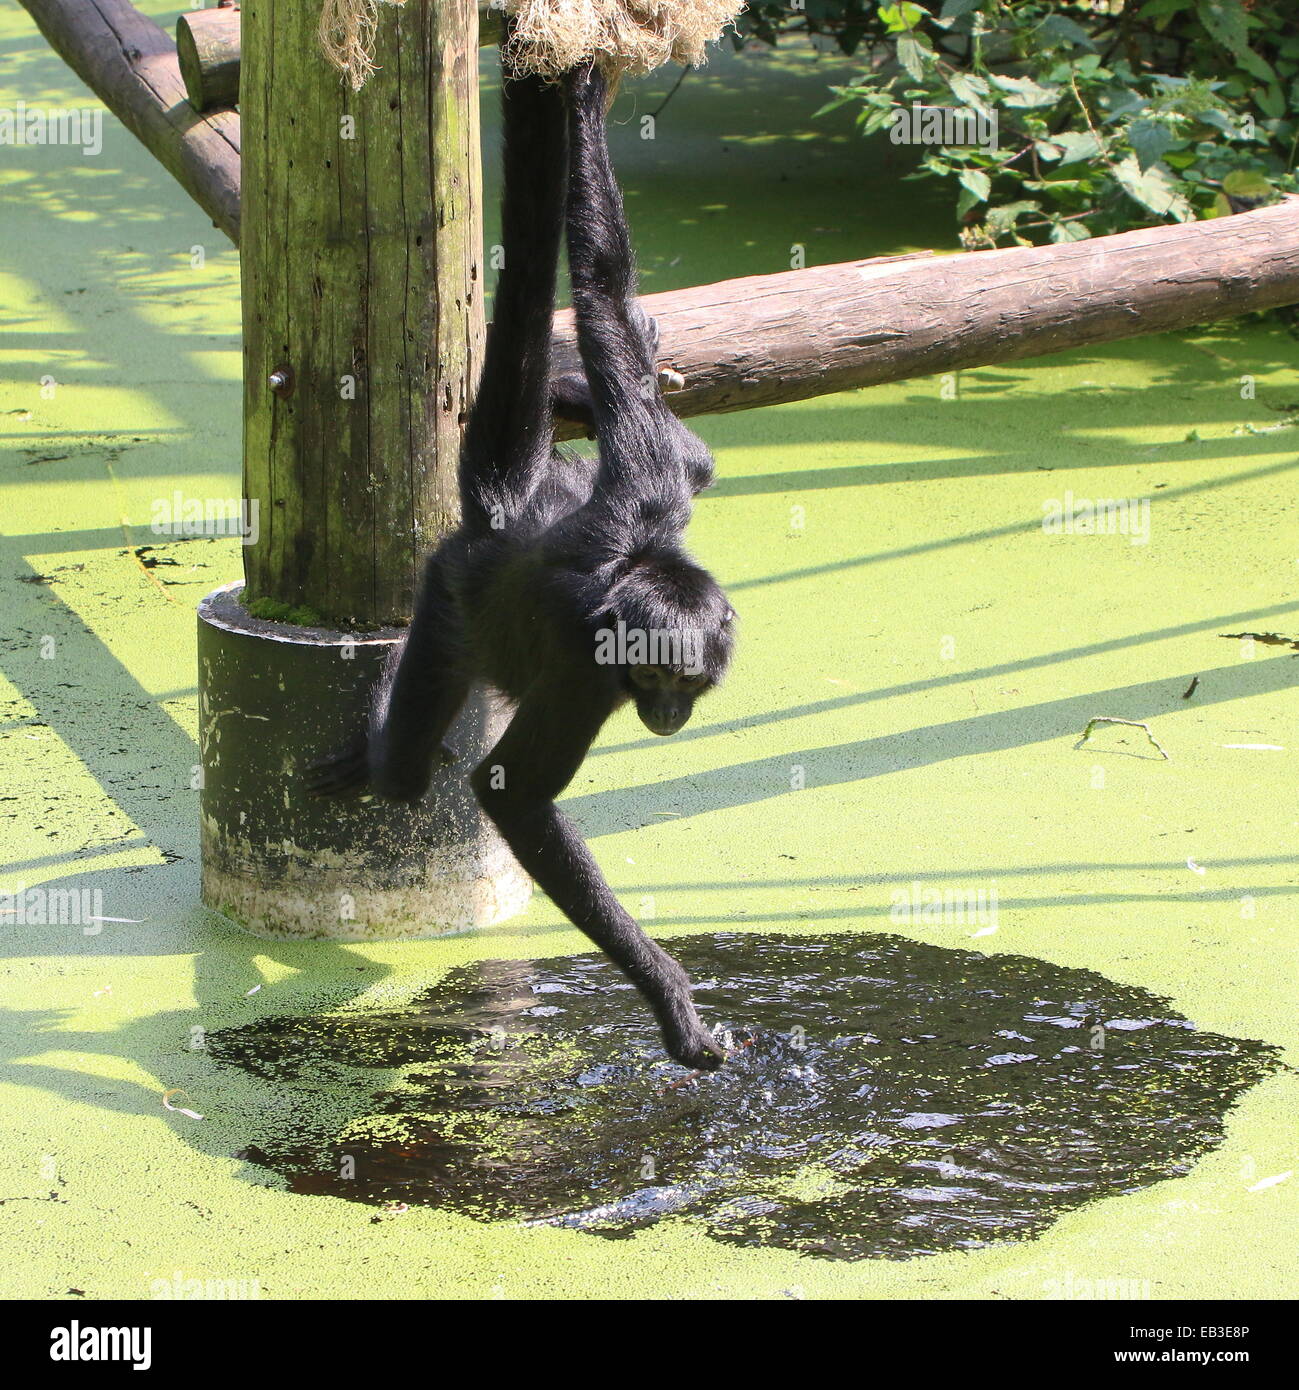 Cabeza negra colombiana mono araña ( Ateles fusciceps robustus) de agua potable en el zoo de Emmen, Países Bajos Foto de stock